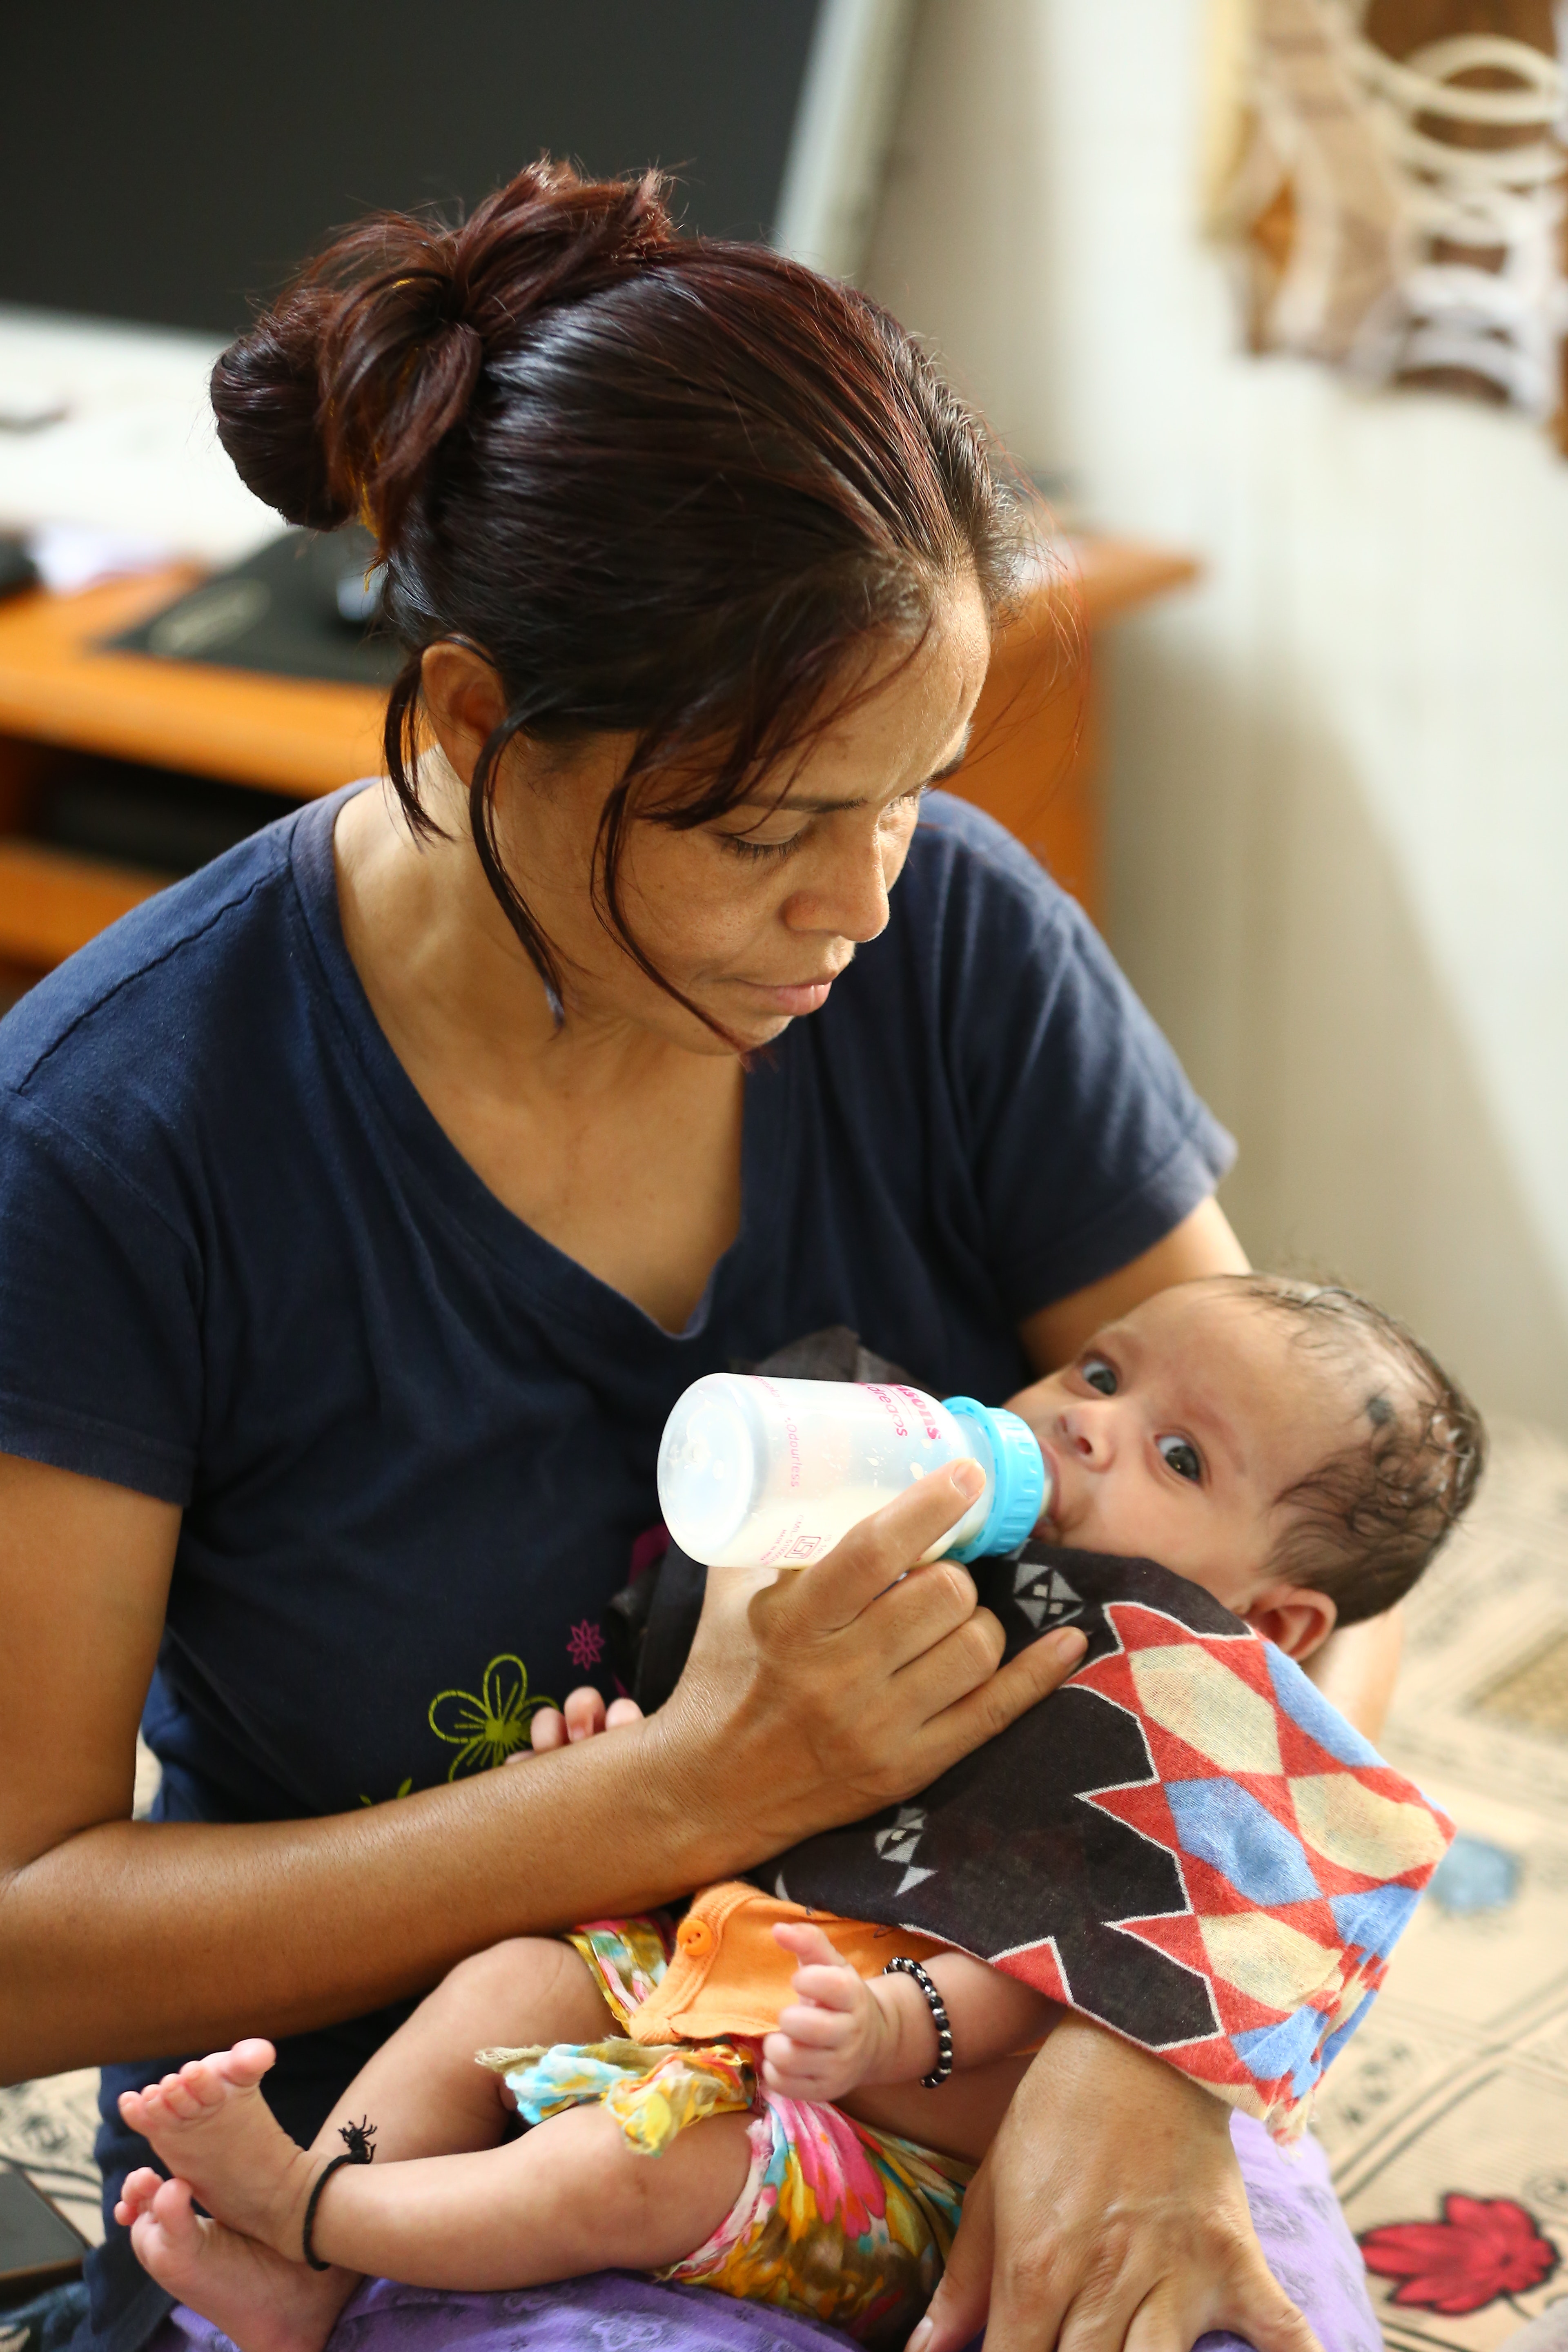 scholarly articles on breastfeeding vs bottle feeding